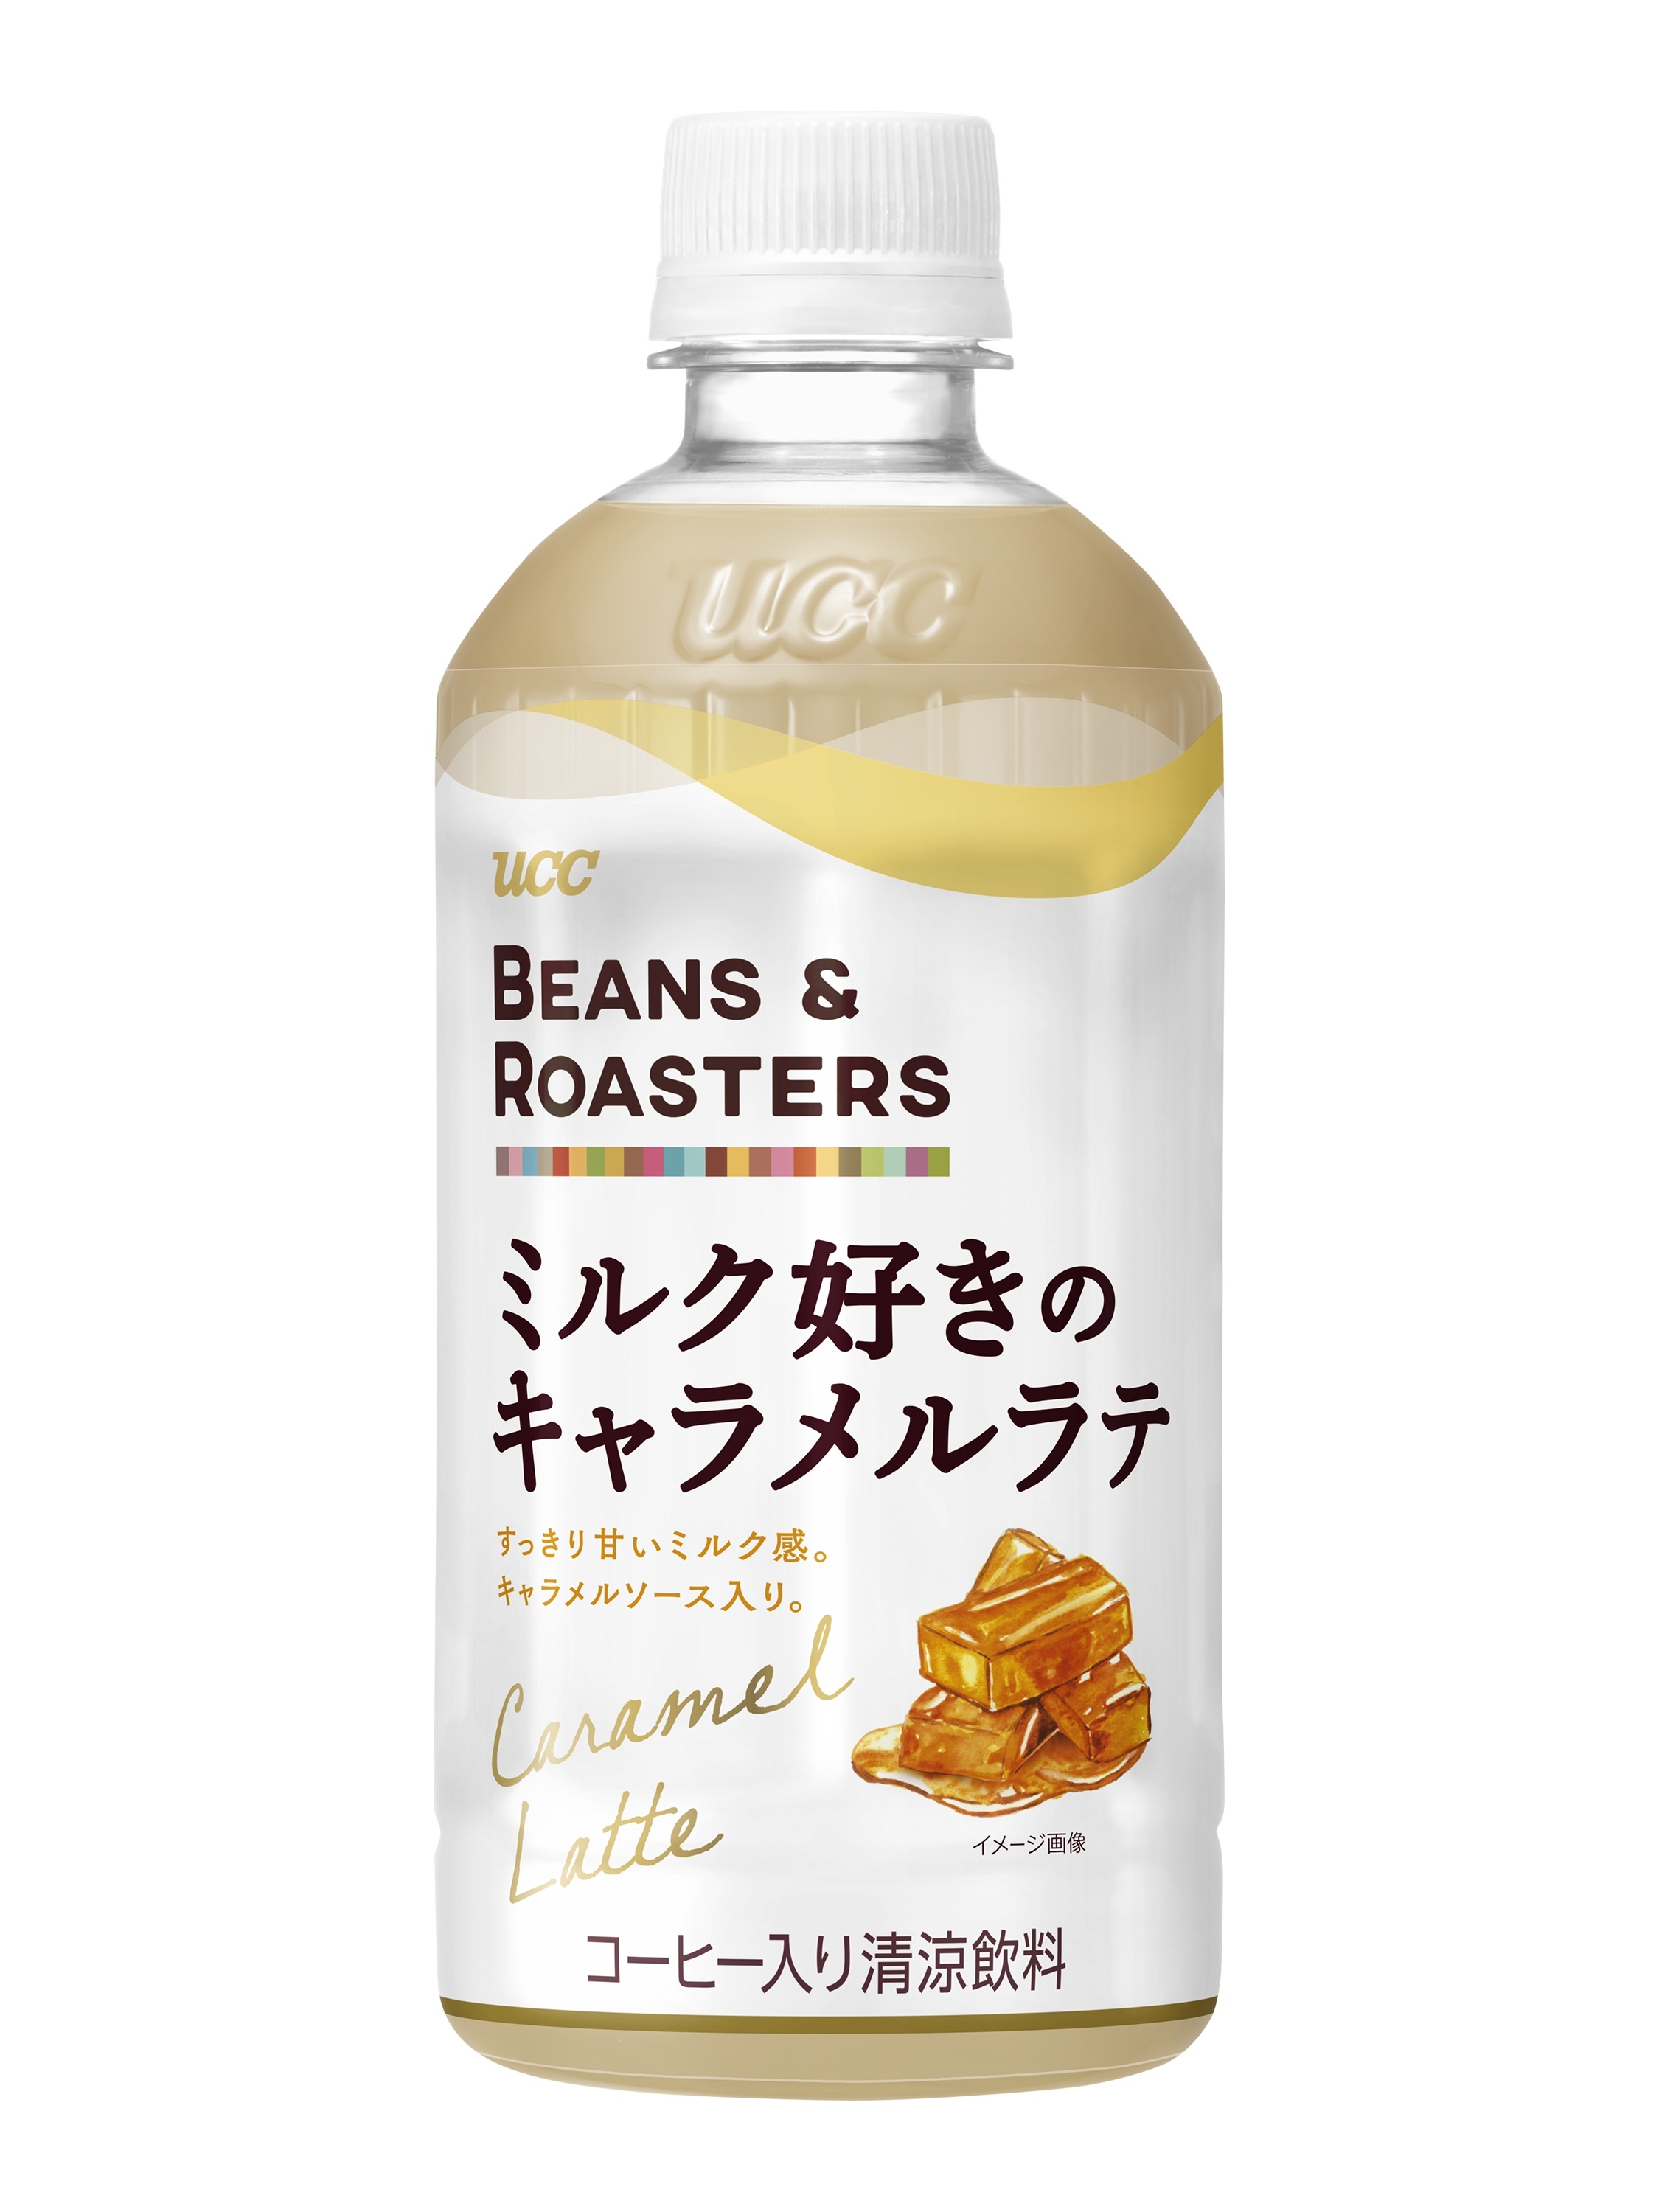 UCCローストチャンピオン“ROAST MASTER”が提案する
焙煎技術を駆使して作りあげたコーヒー　
『UCC ROAST MASTER』ブランド
9月7日(月)より全国でリニューアル発売！